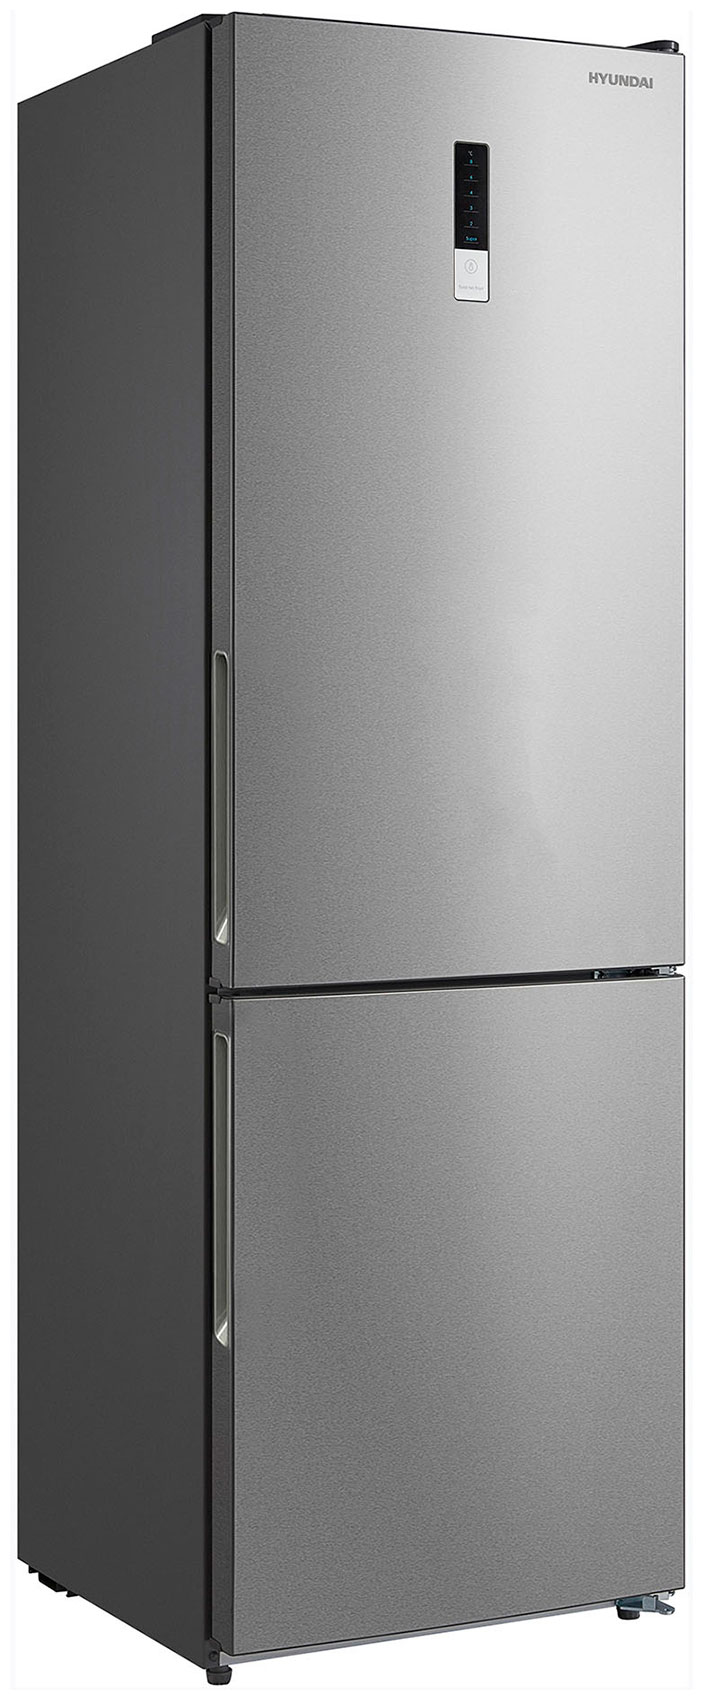 Двухкамерный холодильник Hyundai CC3095FIX нержавеющая сталь двухкамерный холодильник hyundai cc3595fwt белый